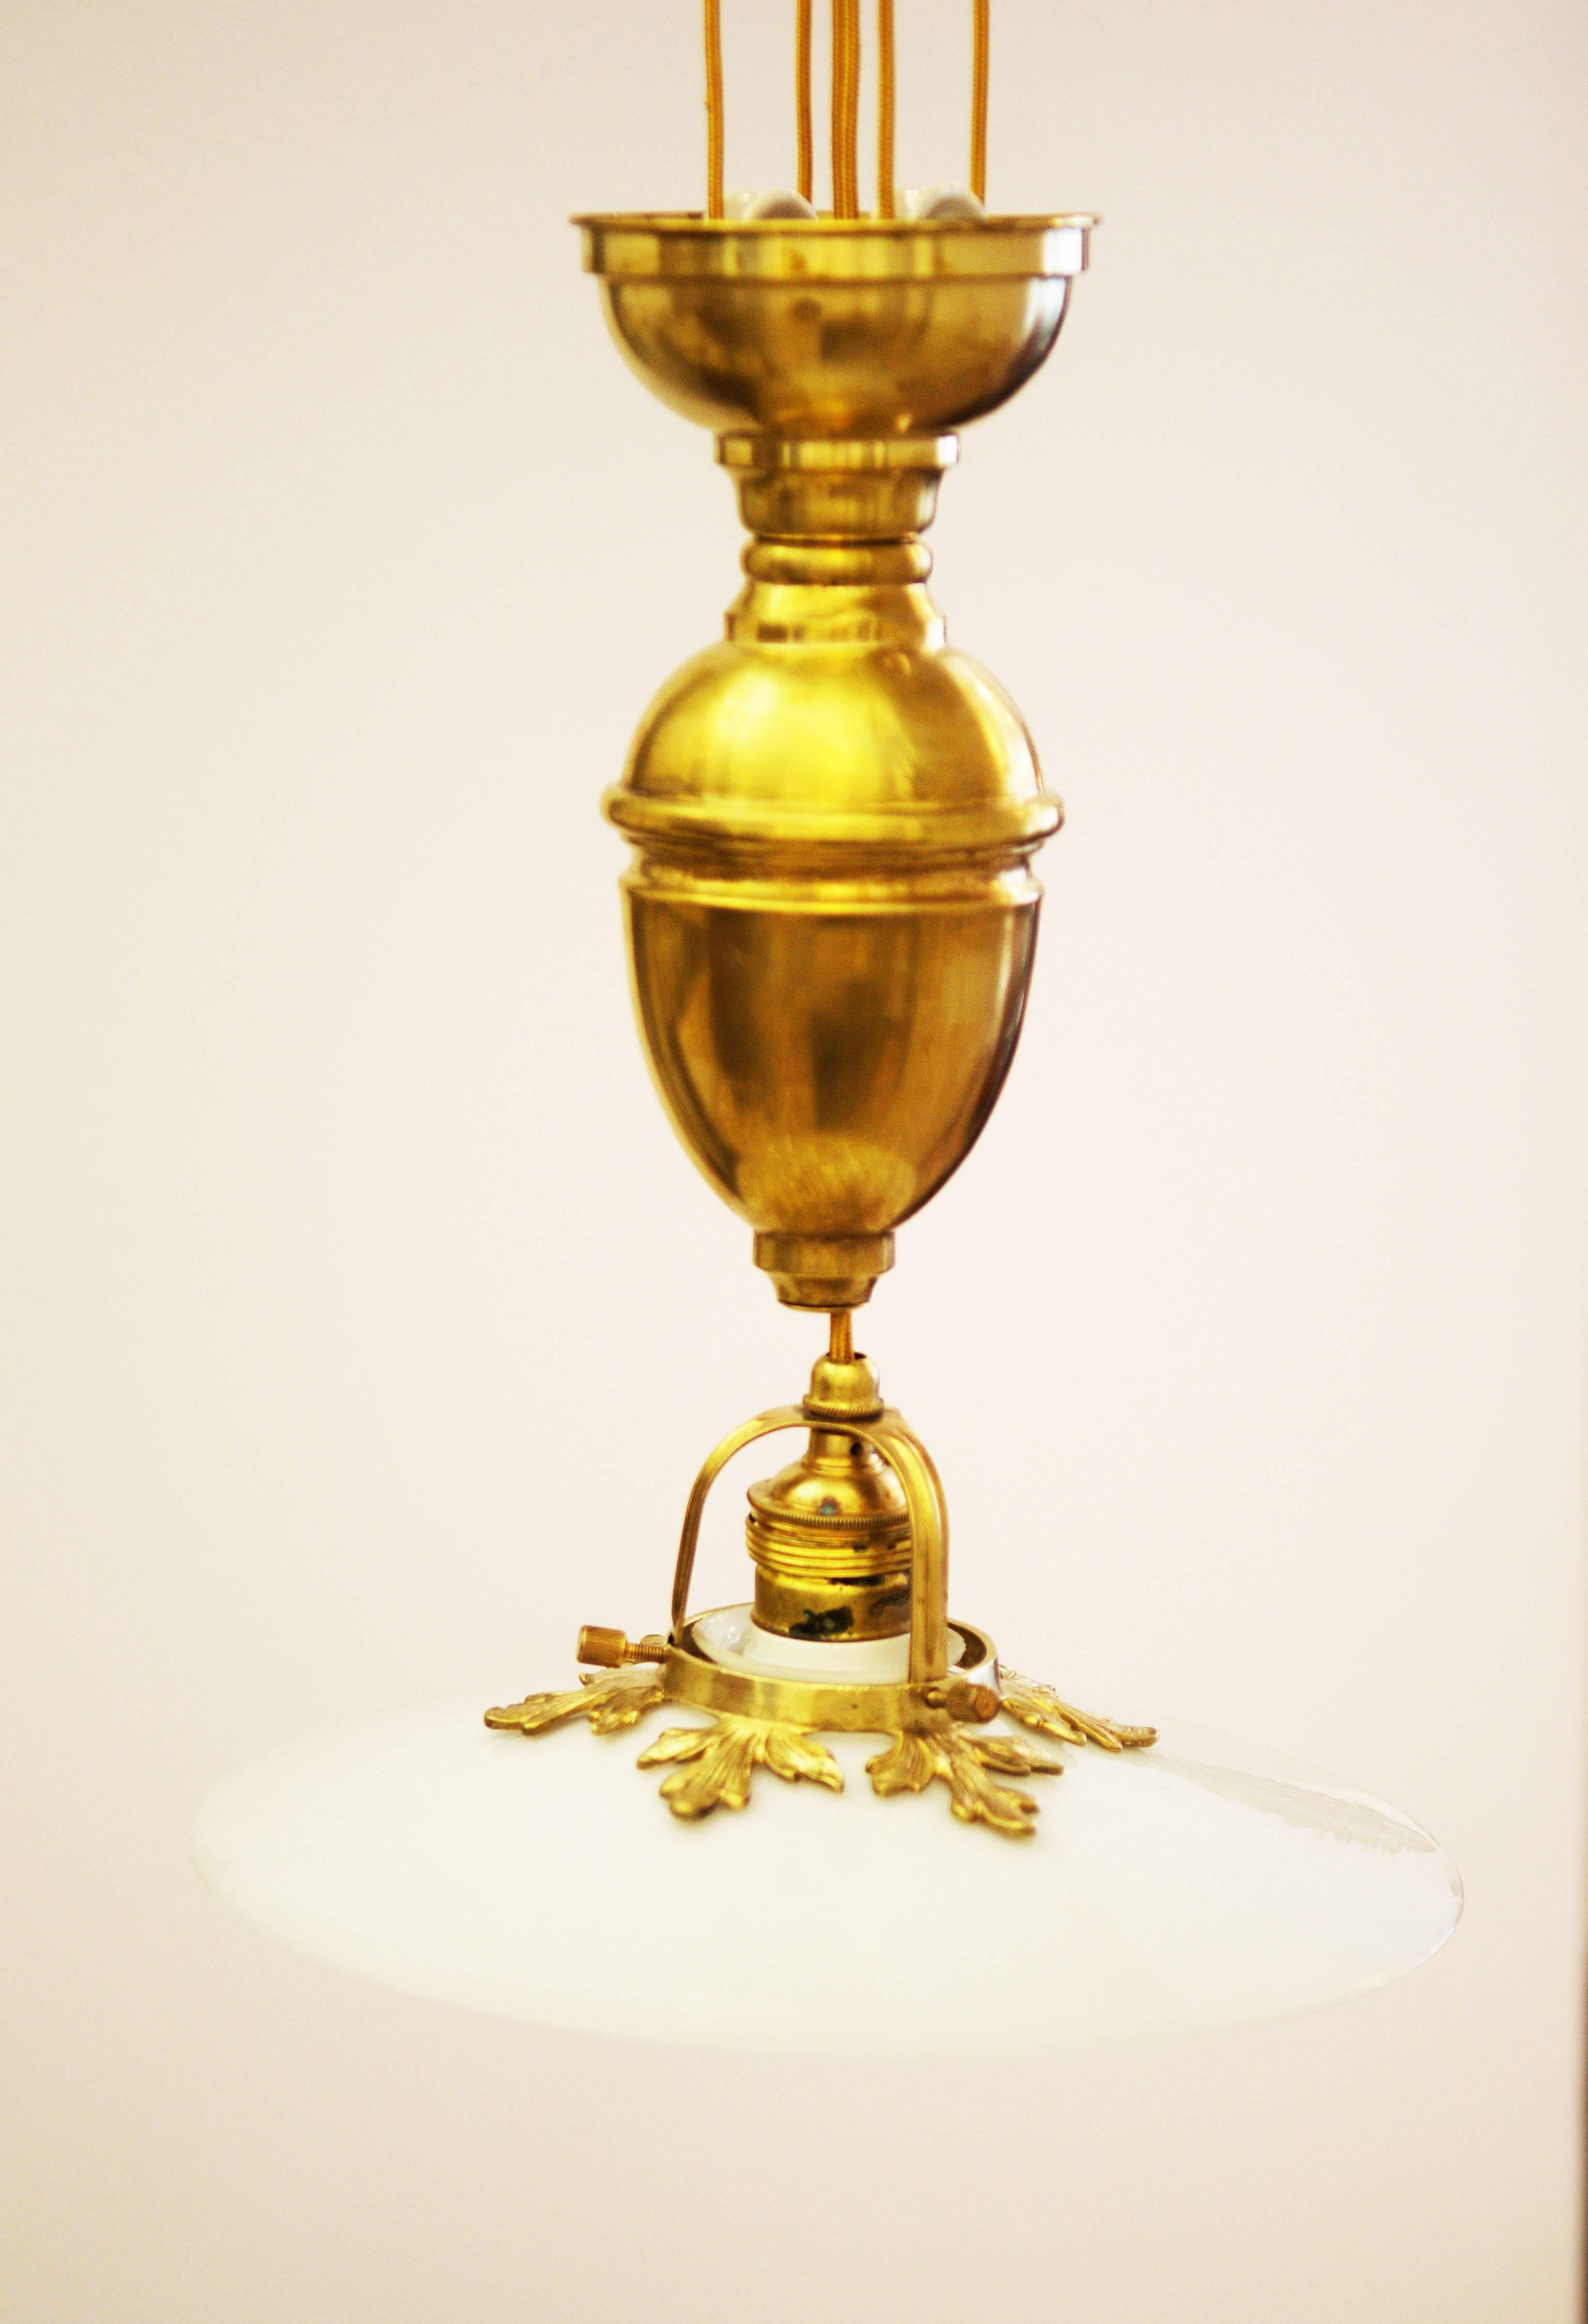 Lampe Art Nouveau en laiton avec forme de lampe en verre de lait d'environ 1900.
entièrement restauré avec un nouveau système électrique.